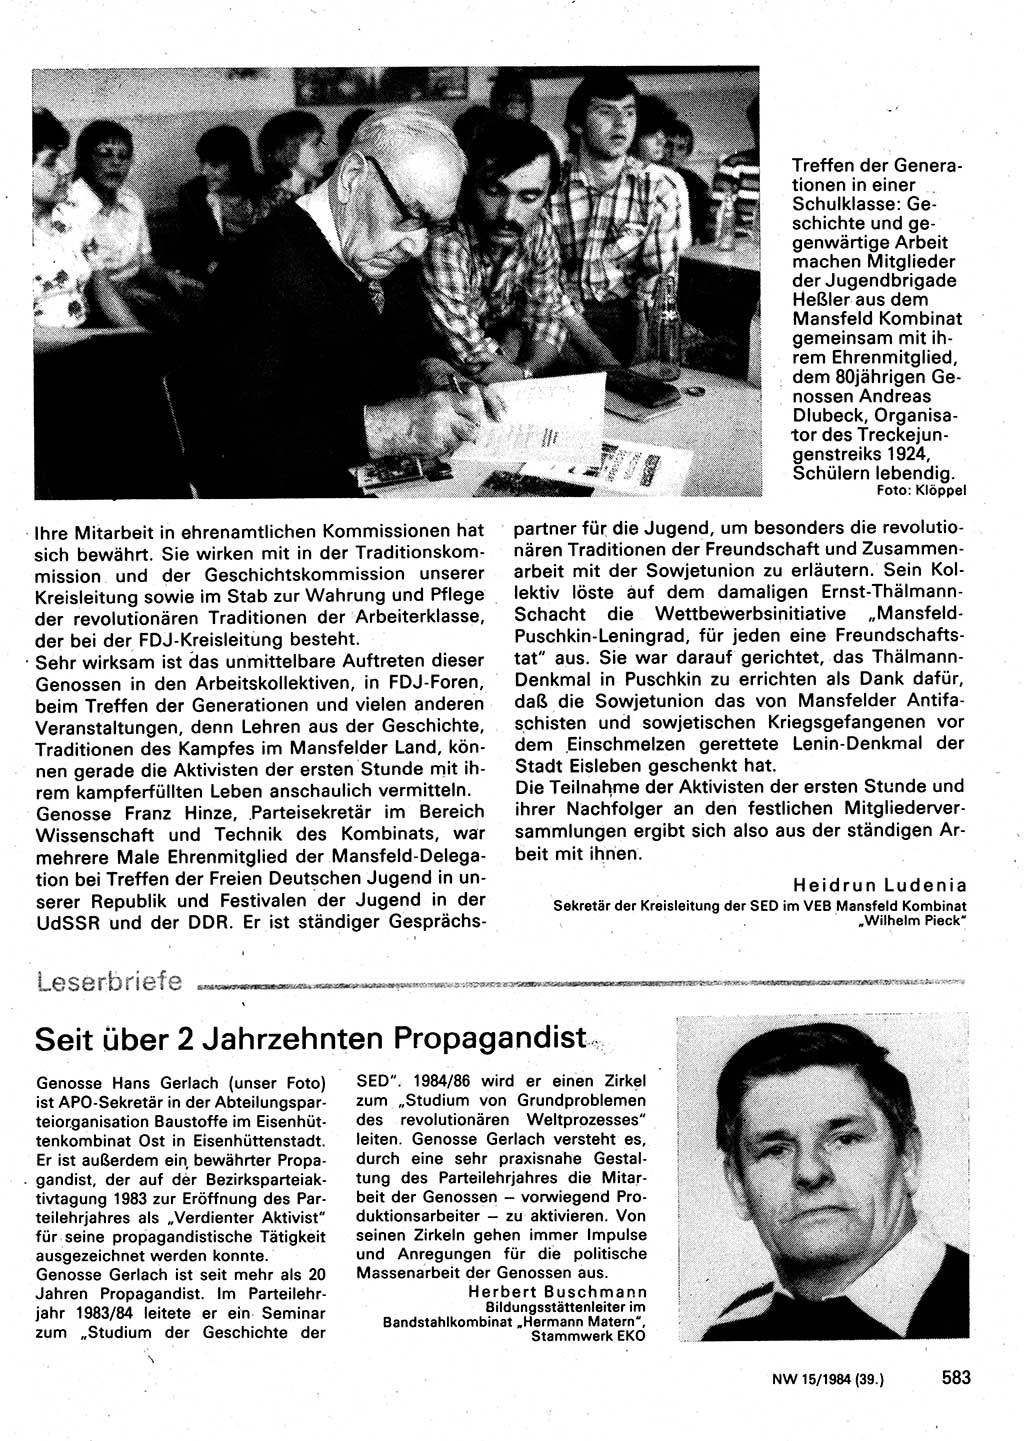 Neuer Weg (NW), Organ des Zentralkomitees (ZK) der SED (Sozialistische Einheitspartei Deutschlands) für Fragen des Parteilebens, 39. Jahrgang [Deutsche Demokratische Republik (DDR)] 1984, Seite 583 (NW ZK SED DDR 1984, S. 583)